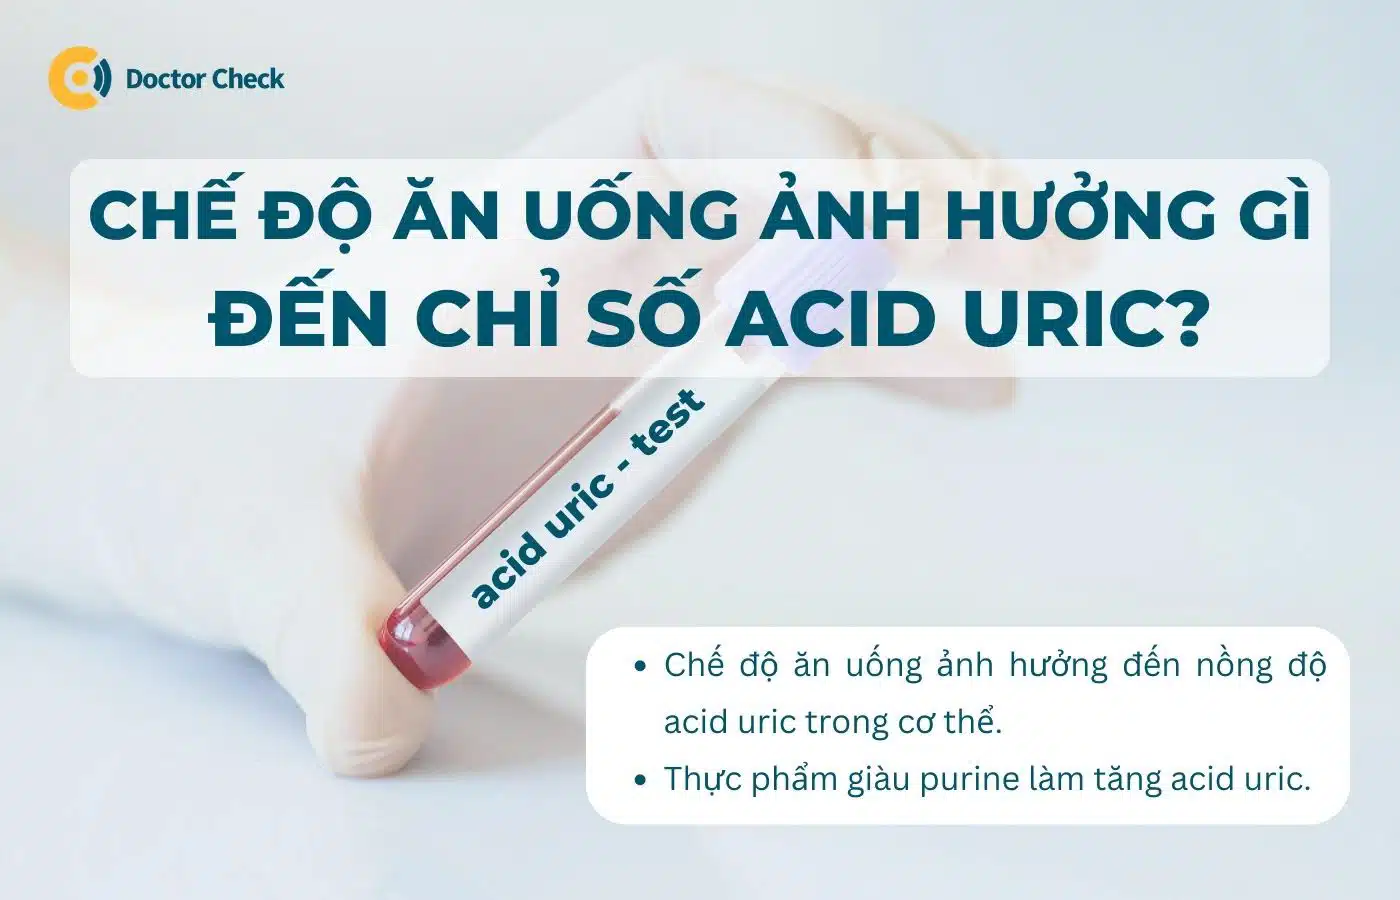 Chế độ ăn uống ảnh hưởng gì đến chỉ số acid uric?